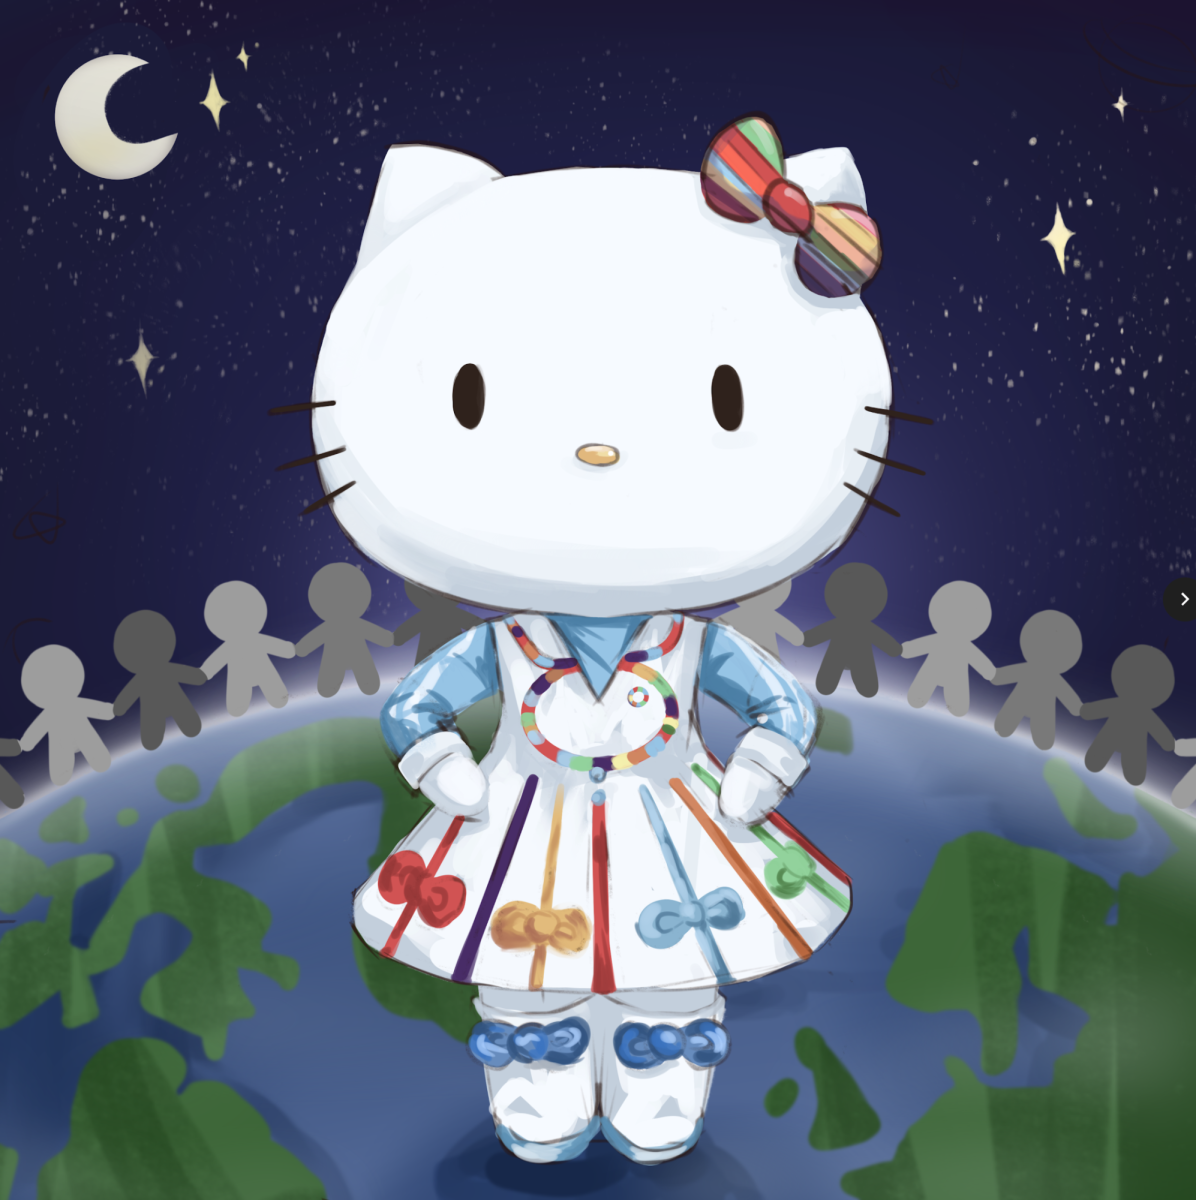 Hello Kitty - #HelloGlobalGoals Launch